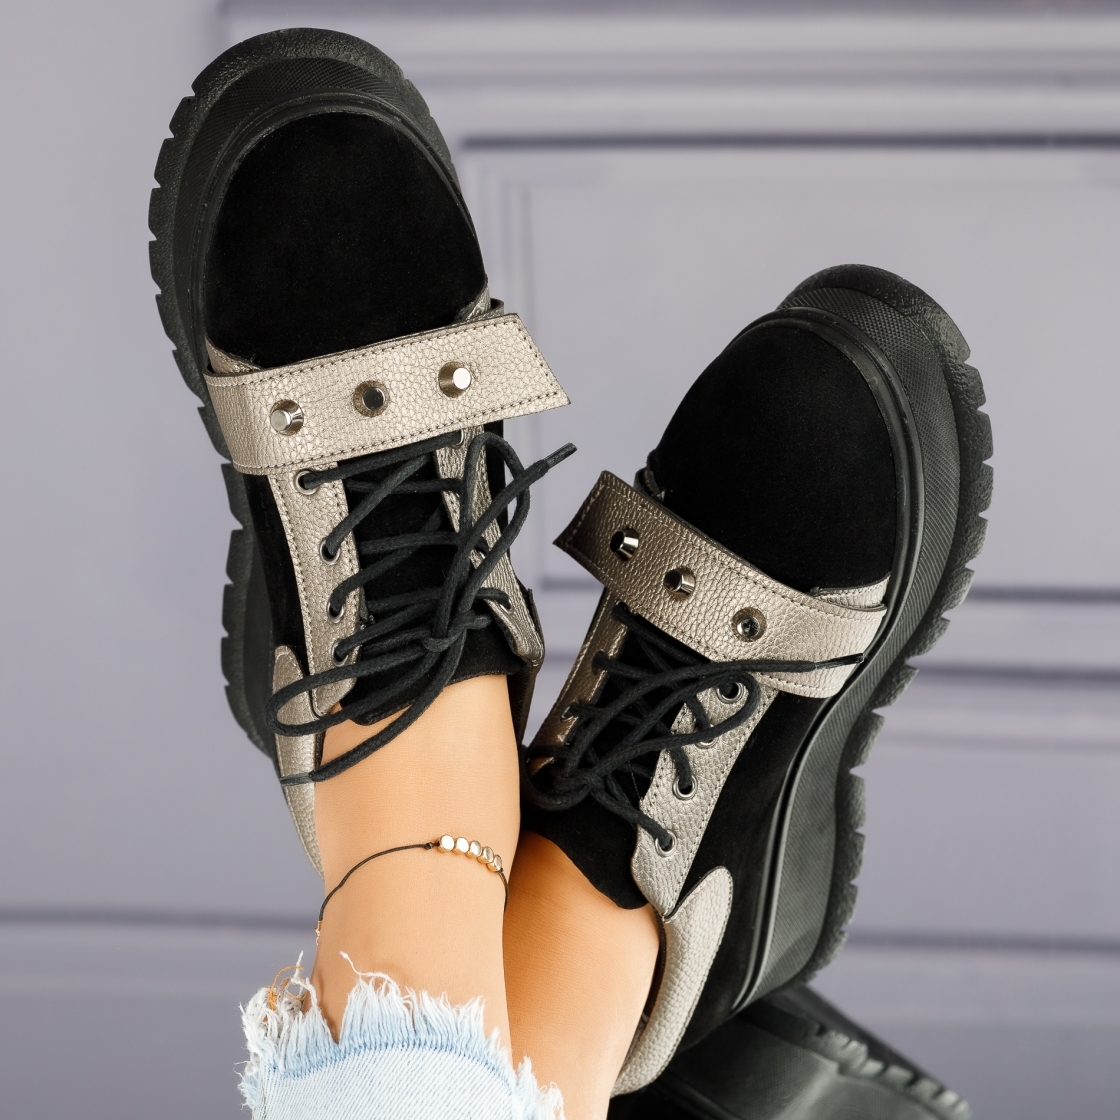 Alkalmi cipő fekete/szürke Emily #4036M